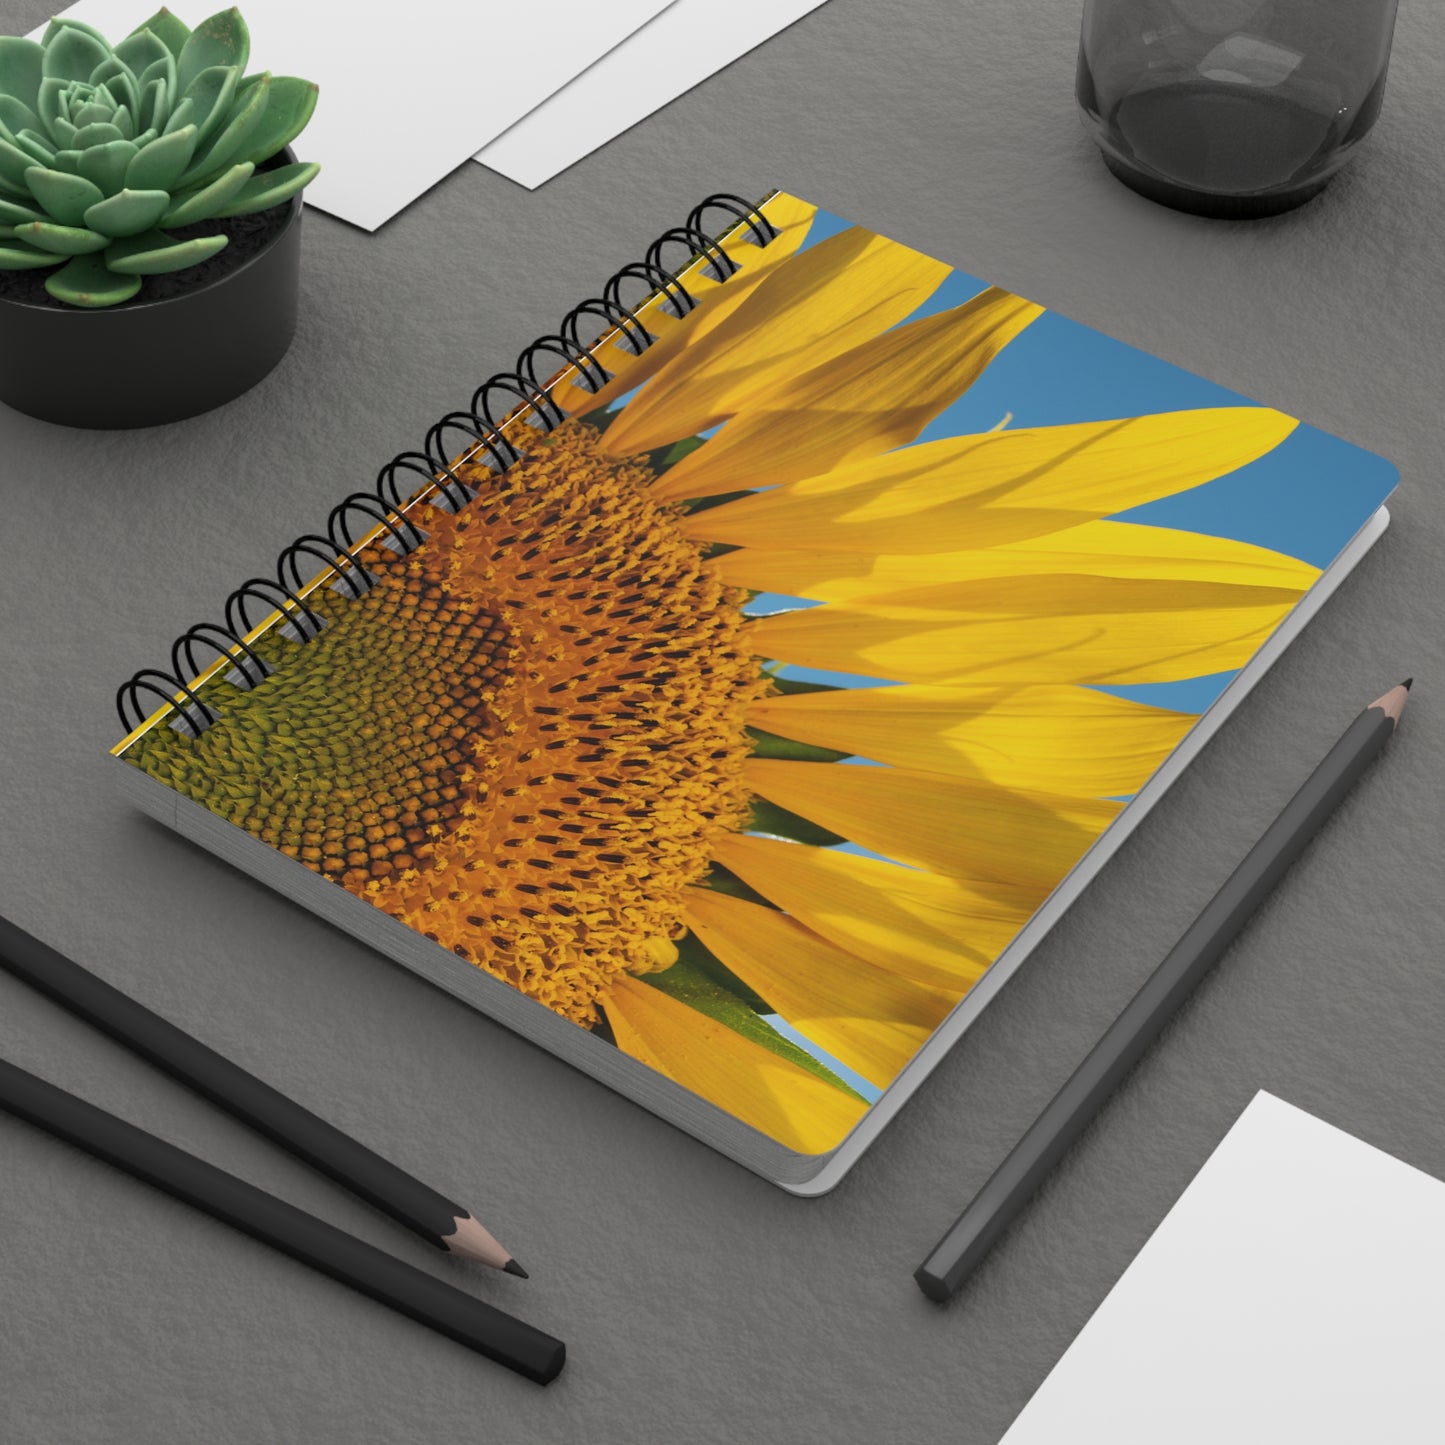 Sunflowers 03 - Spiral Bound Journal One Size